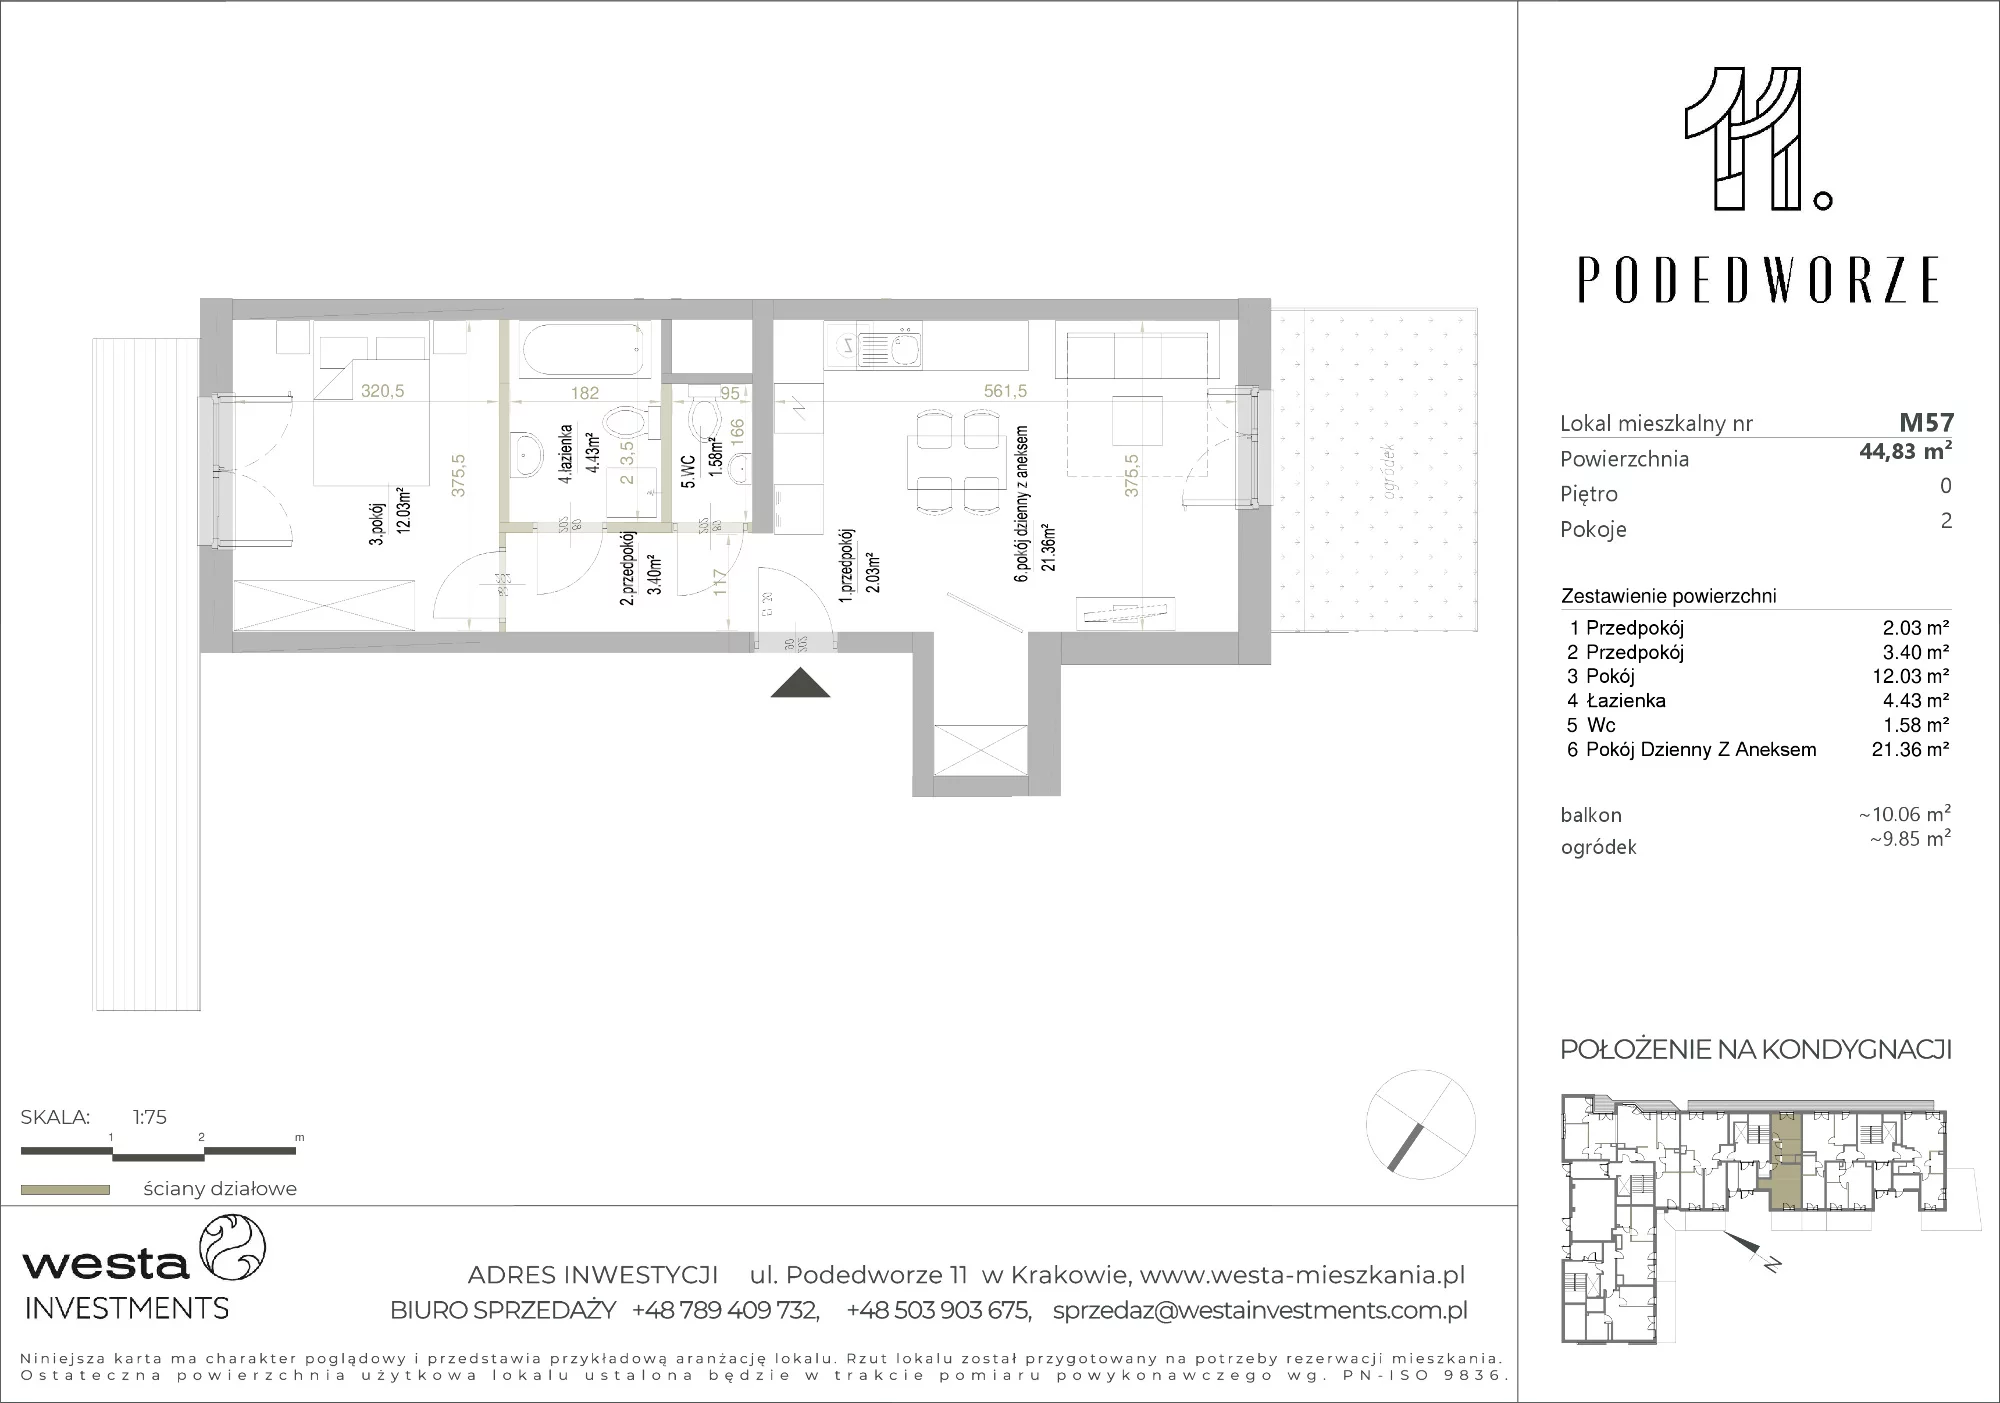 Mieszkanie 44,83 m², parter, oferta nr 57, Podedworze 11, Kraków, Podgórze Duchackie, Piaski Wielkie, ul. Podedworze 11